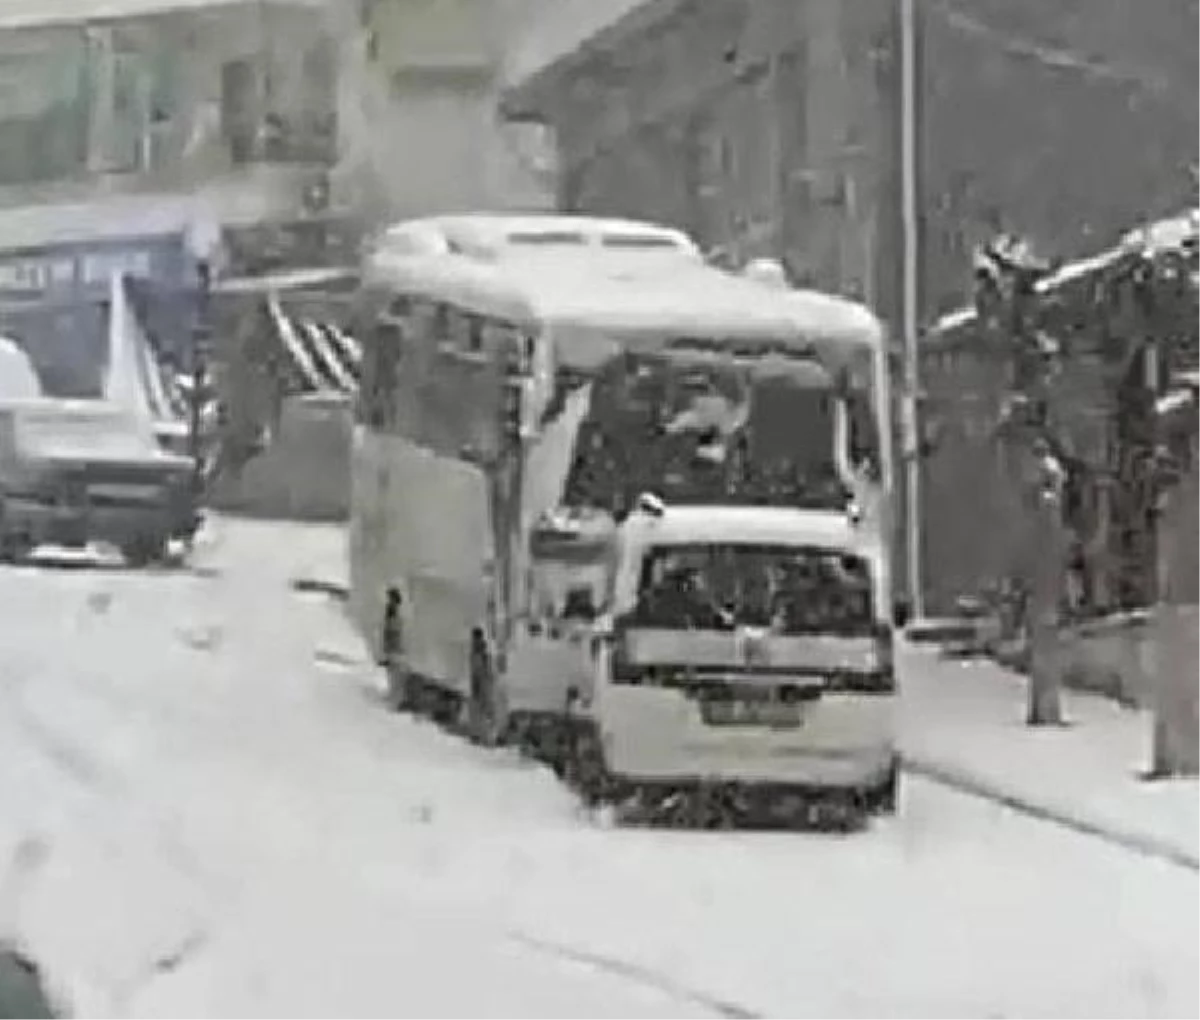 Öğrenci midibüsü karla kaplı yolda hafif ticari aracı sürükledi